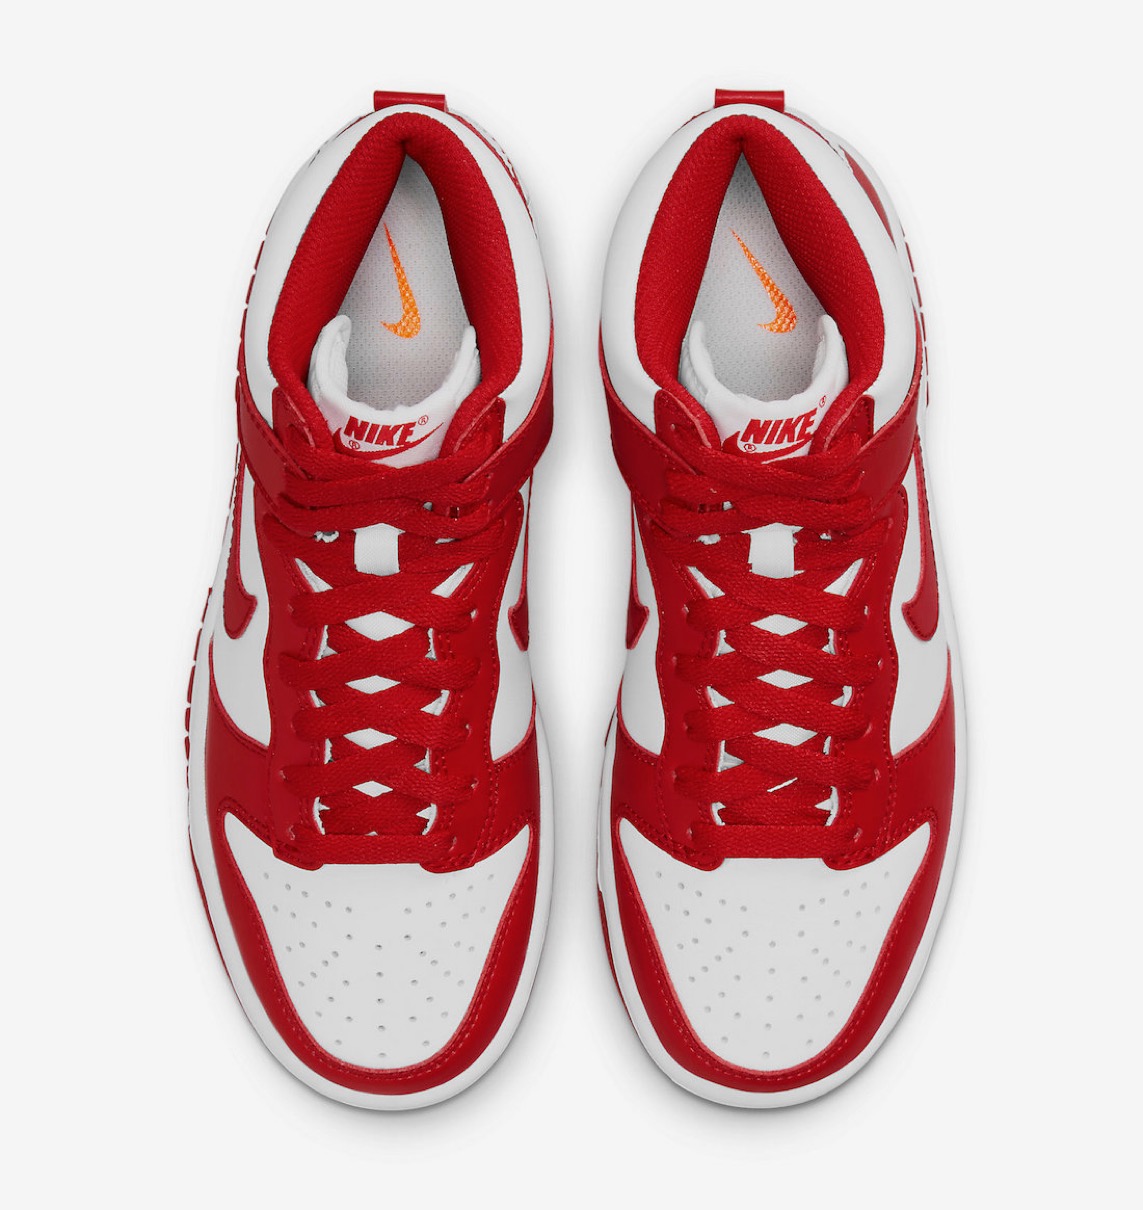 Nike】“St. John's”カラーのDunk High Retro “University Red”が国内4 